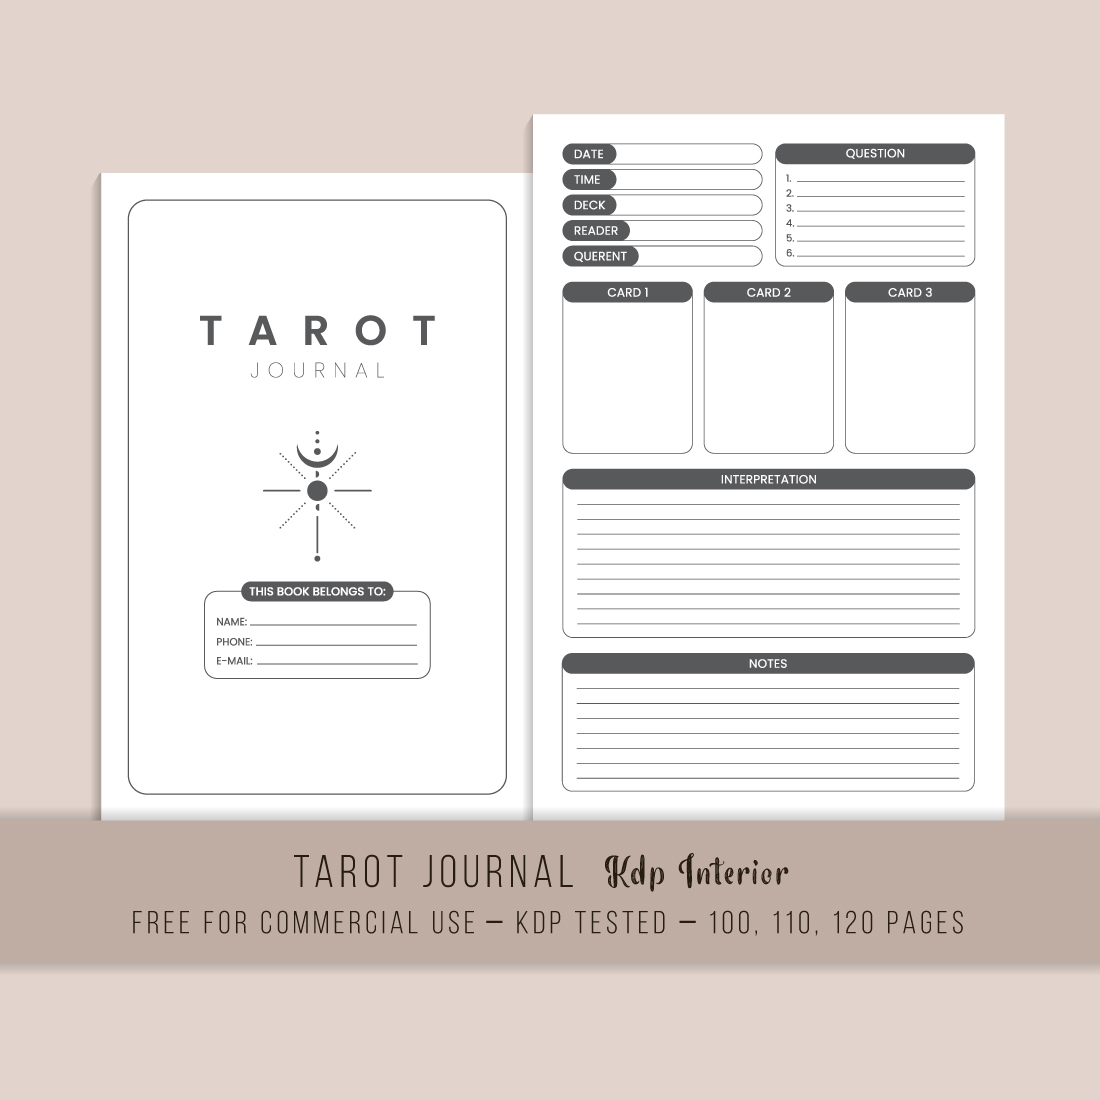 Tarot Journal KDP Interior main cover